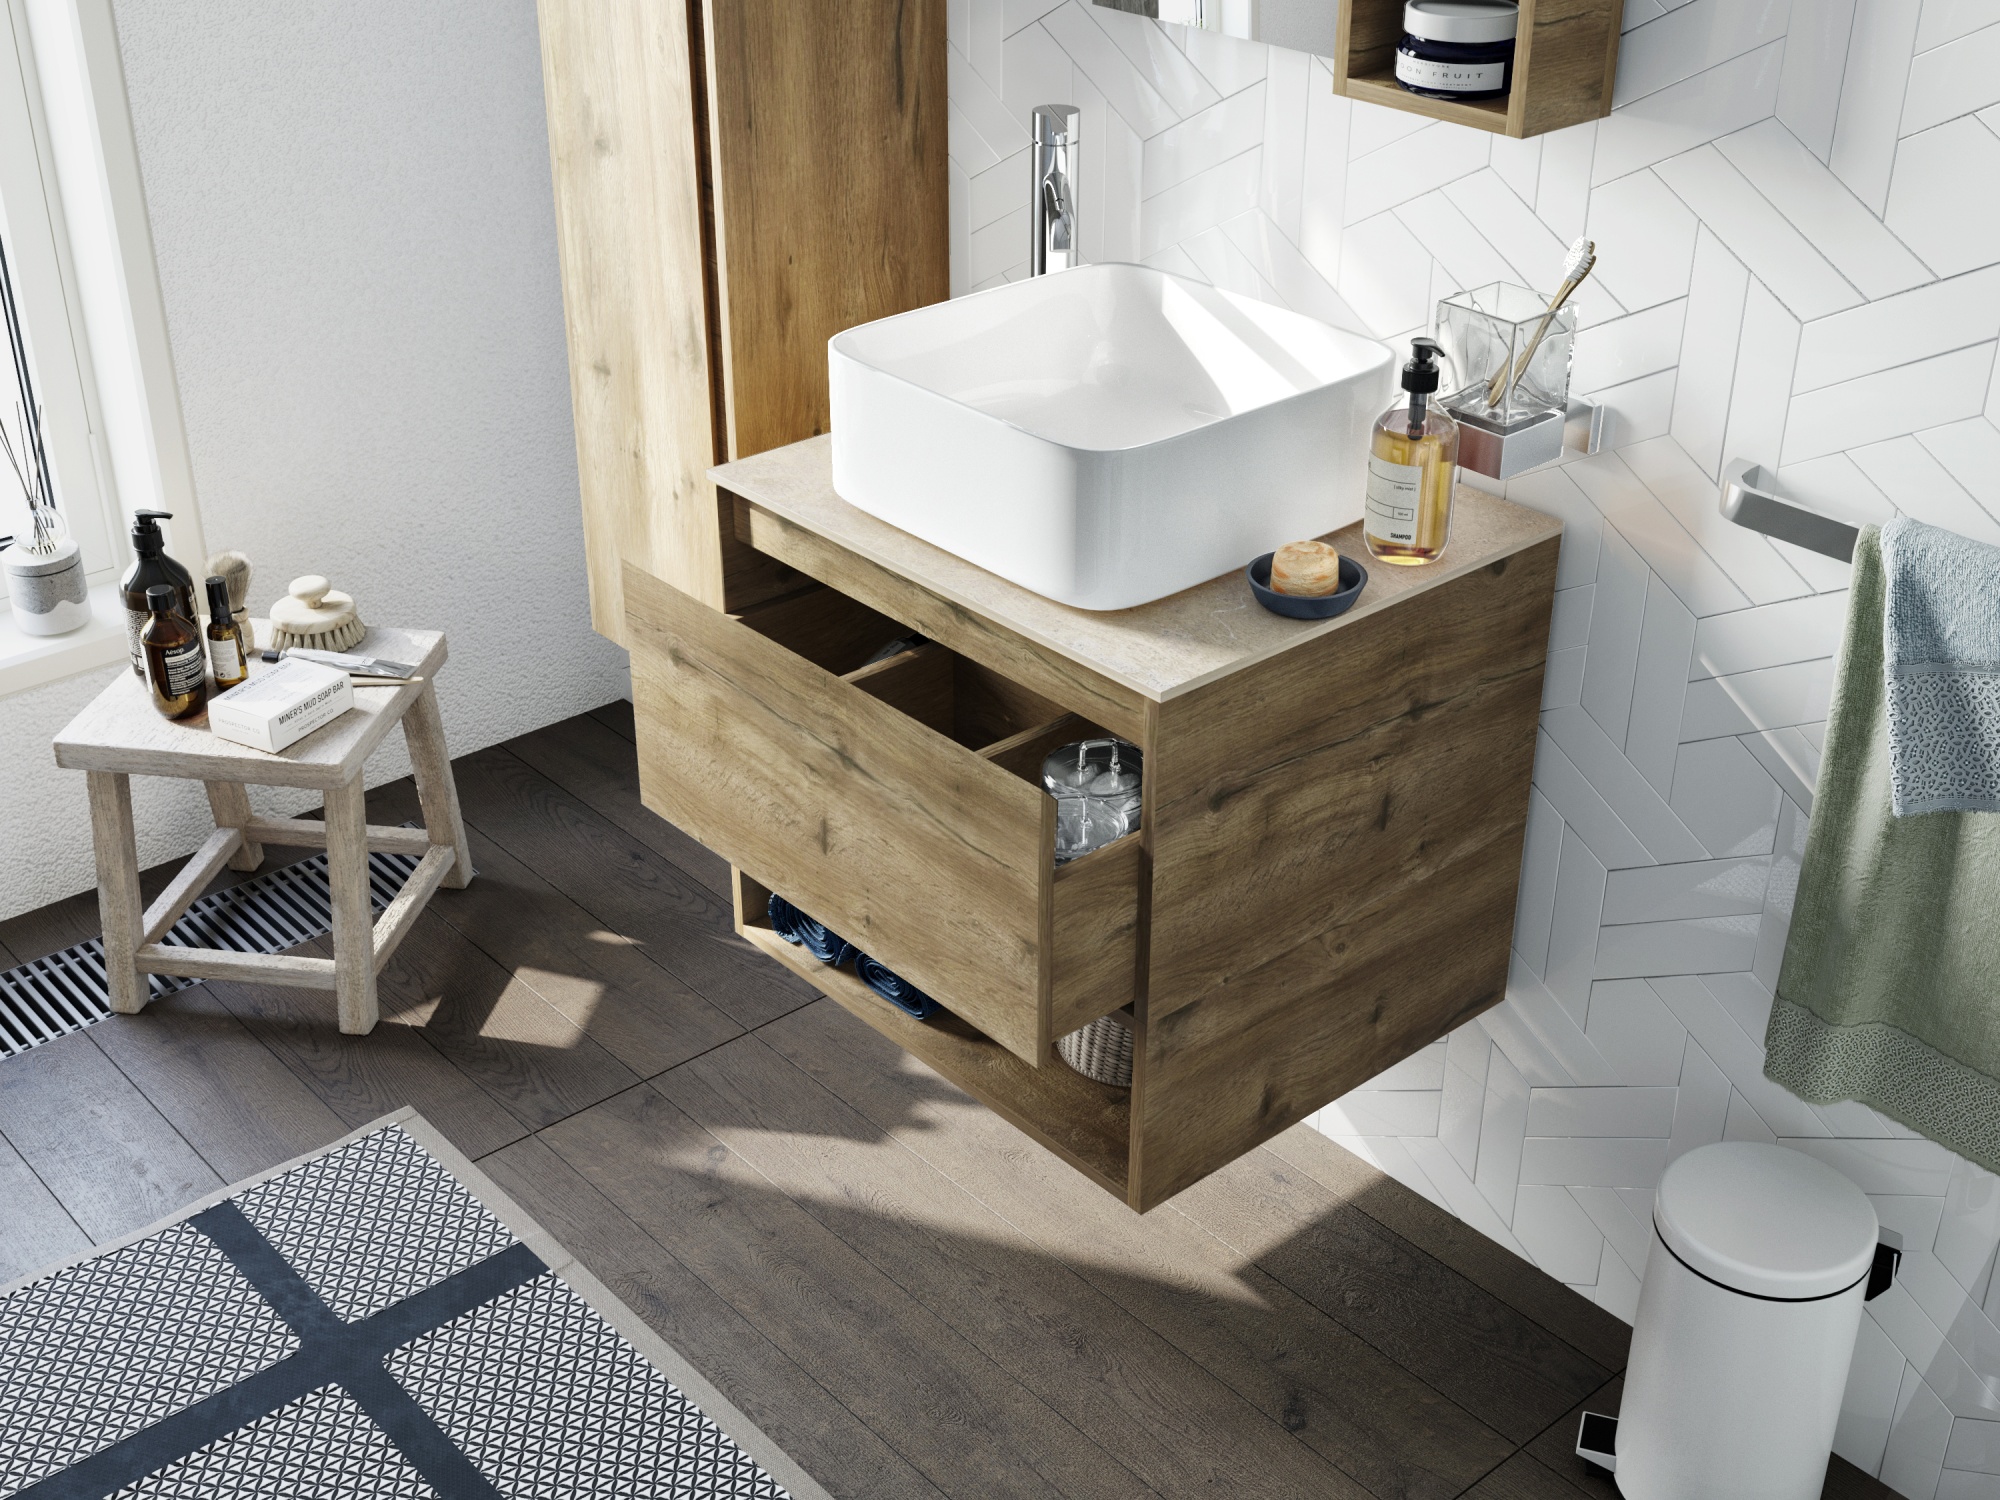 Мебель для ванной STWORKI Карлстад 60 дуб рустикальный, простоун беж, с отверстием под смеситель в с